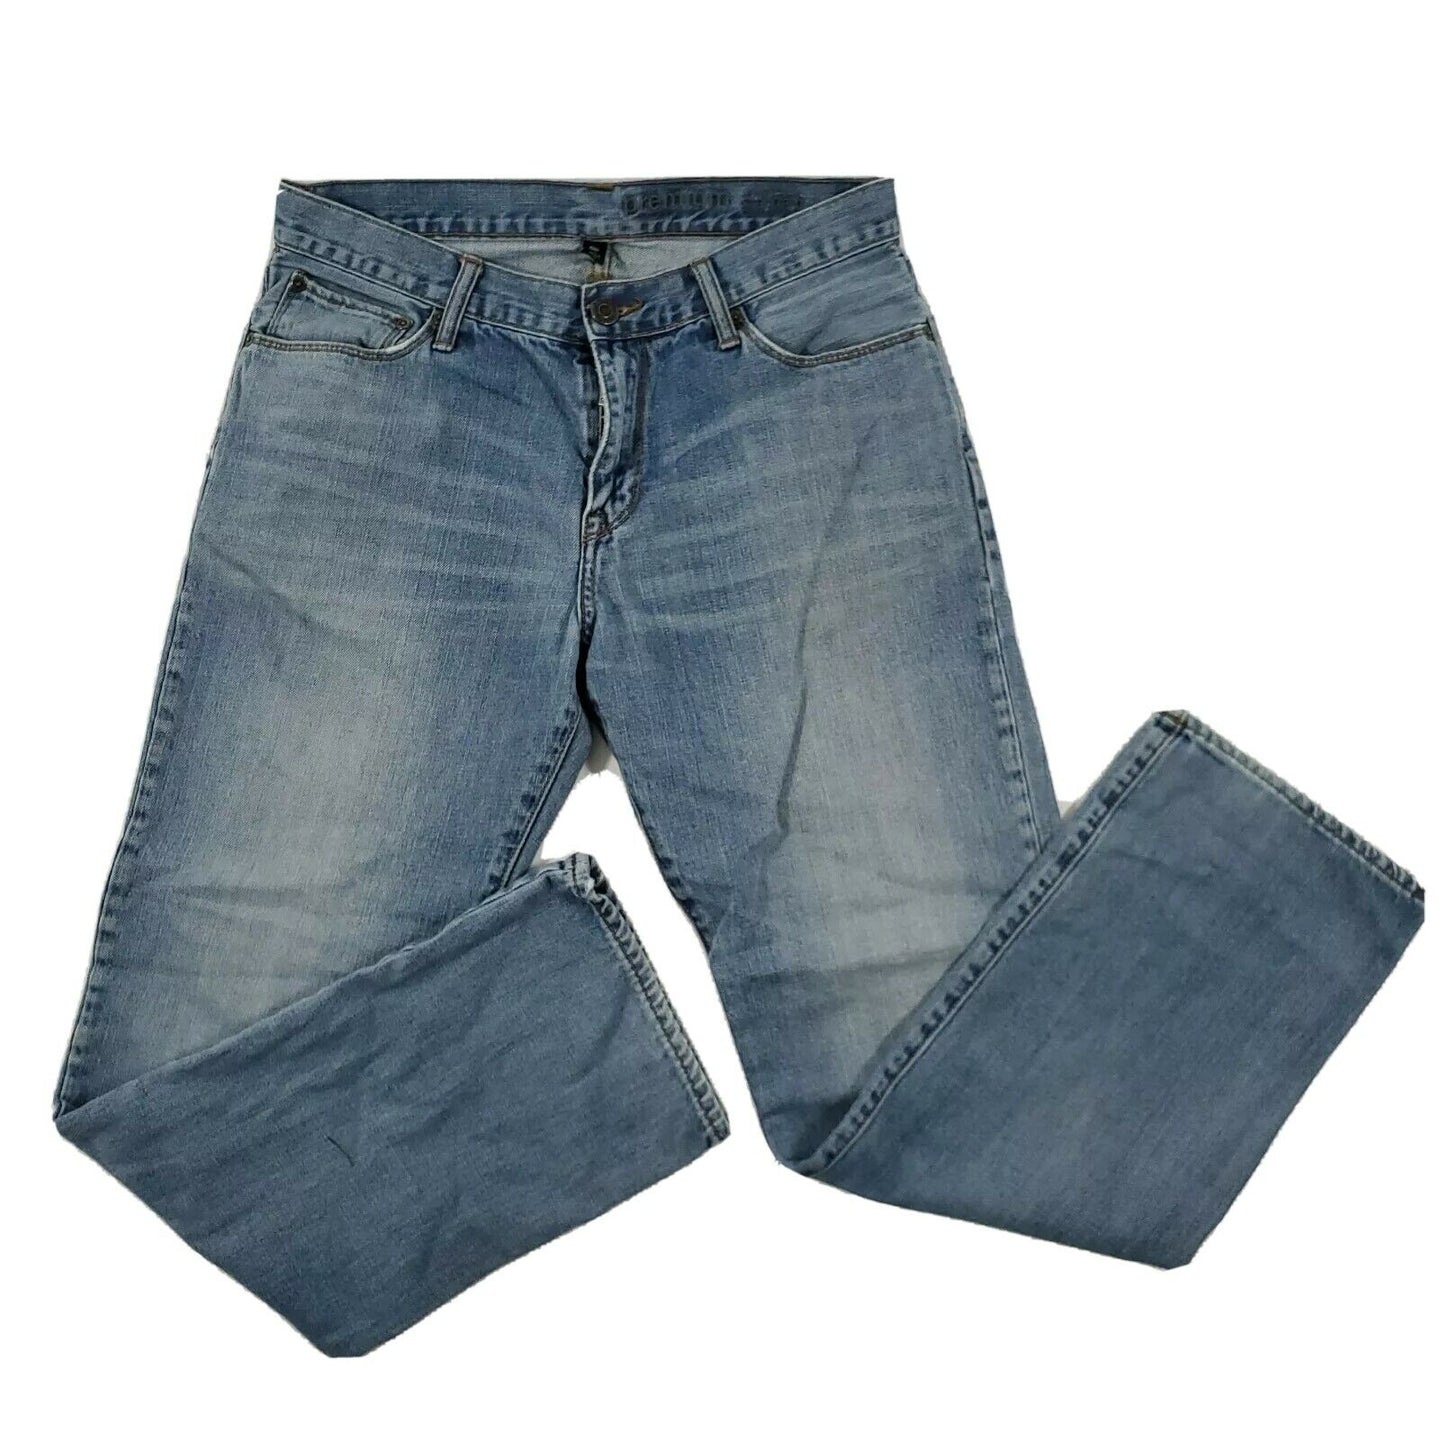 Gap 1969 Premium Denim Jeans 100% Cotton 32 x 32